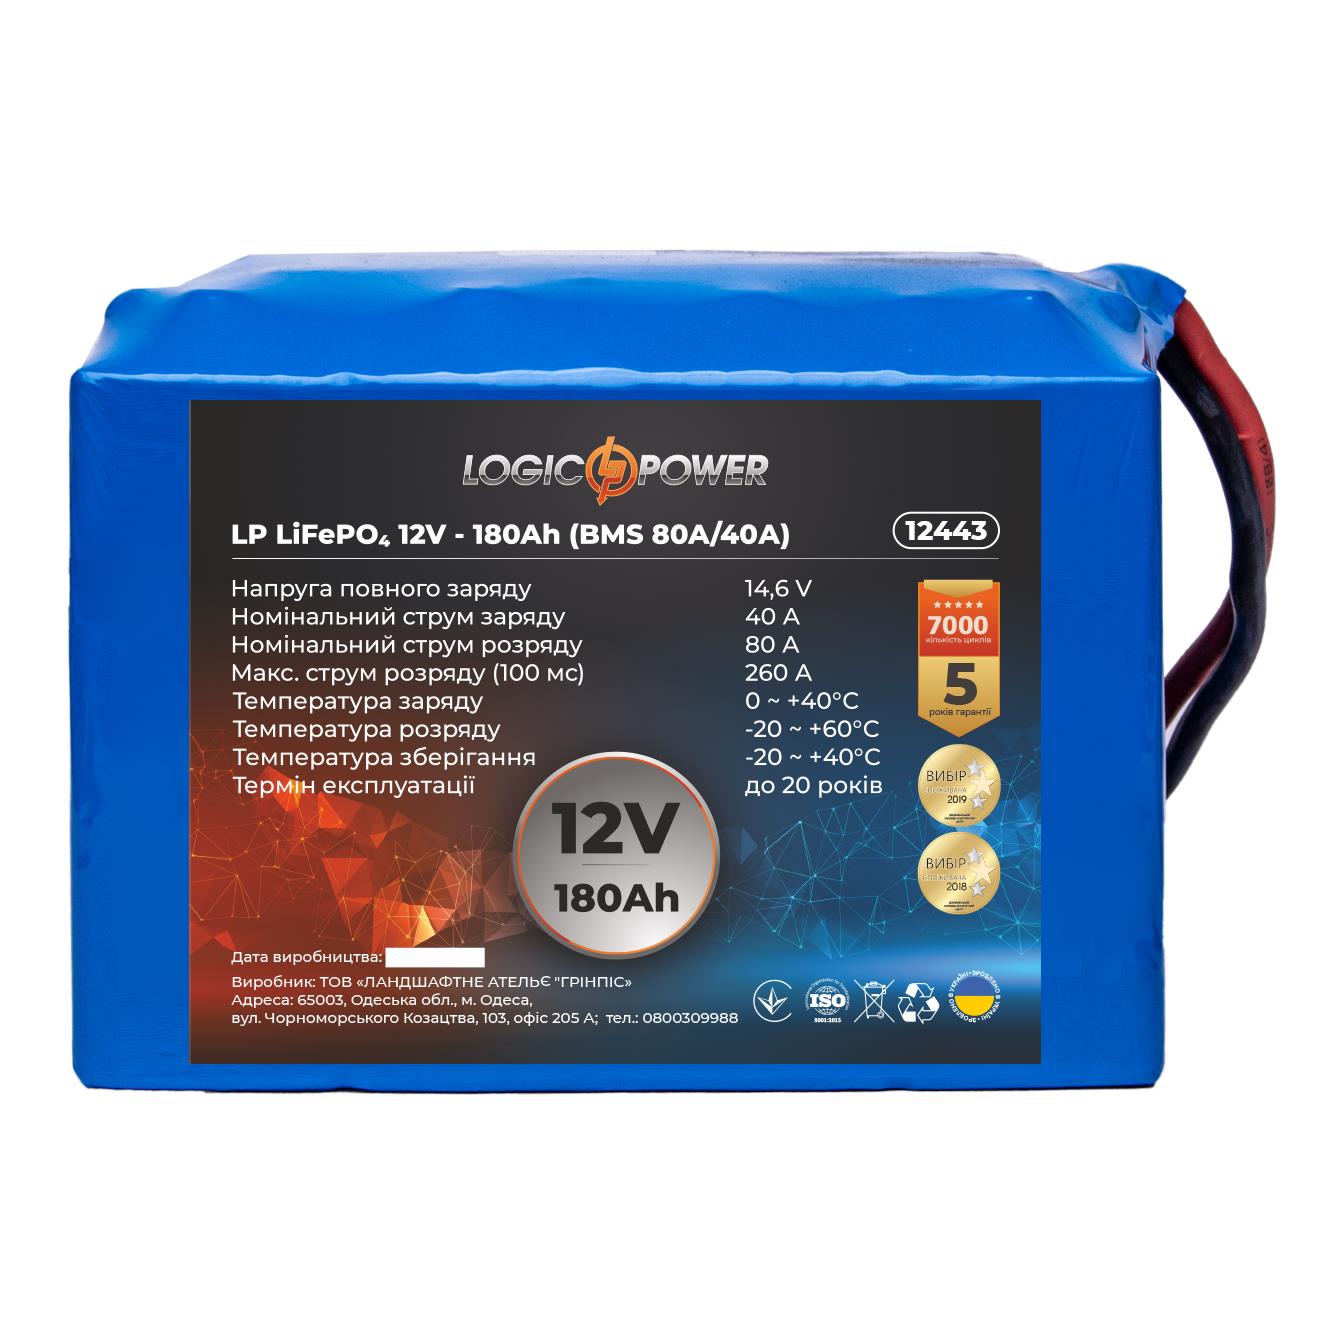 Відгуки акумулятор літій-залізо-фосфатний LogicPower LP LiFePO4 12V - 180 Ah (BMS 80A/40А) (12443)